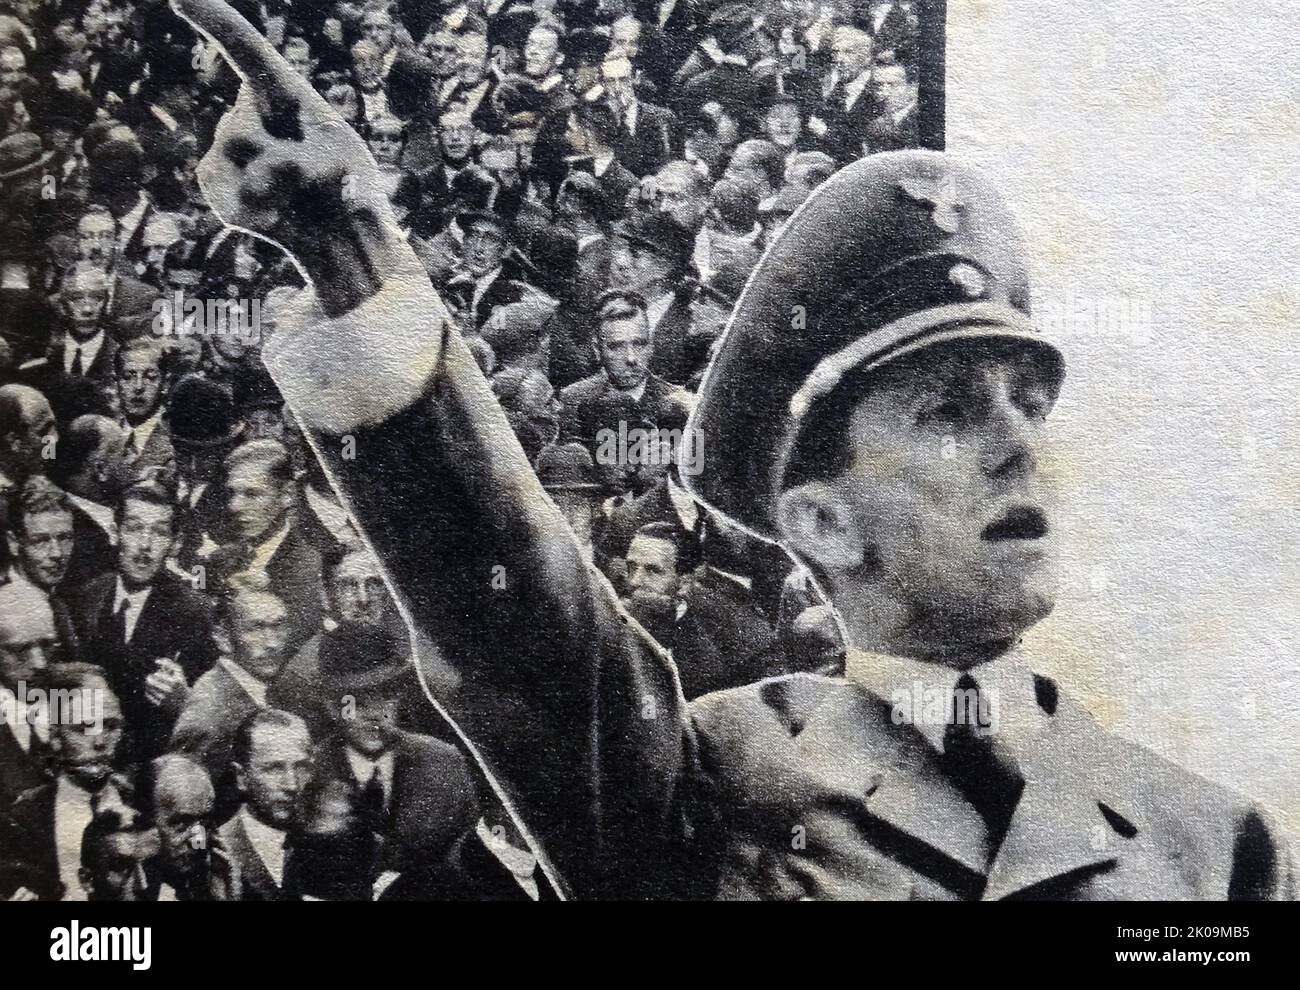 Paul Joseph Goebbels (1897. - 1. Mai 1945) deutscher Nazi-Politiker, der Gauleiter von Berlin, Hauptpropagandisten der Nazi-Partei und dann Reichspropagandaminister von 1933 bis 1945 war. Er war einer der engsten und engagiertesten Gefolgsleute Adolf Hitlers, bekannt für seine Fähigkeiten im öffentlichen Reden und seinen zutiefst virulenten Antisemitismus, was sich in seinen öffentlich geäußerten Ansichten zeigte. Er sprach sich für eine zunehmend härtere Diskriminierung aus, einschließlich der Vernichtung der Juden im Holocaust. Stockfoto